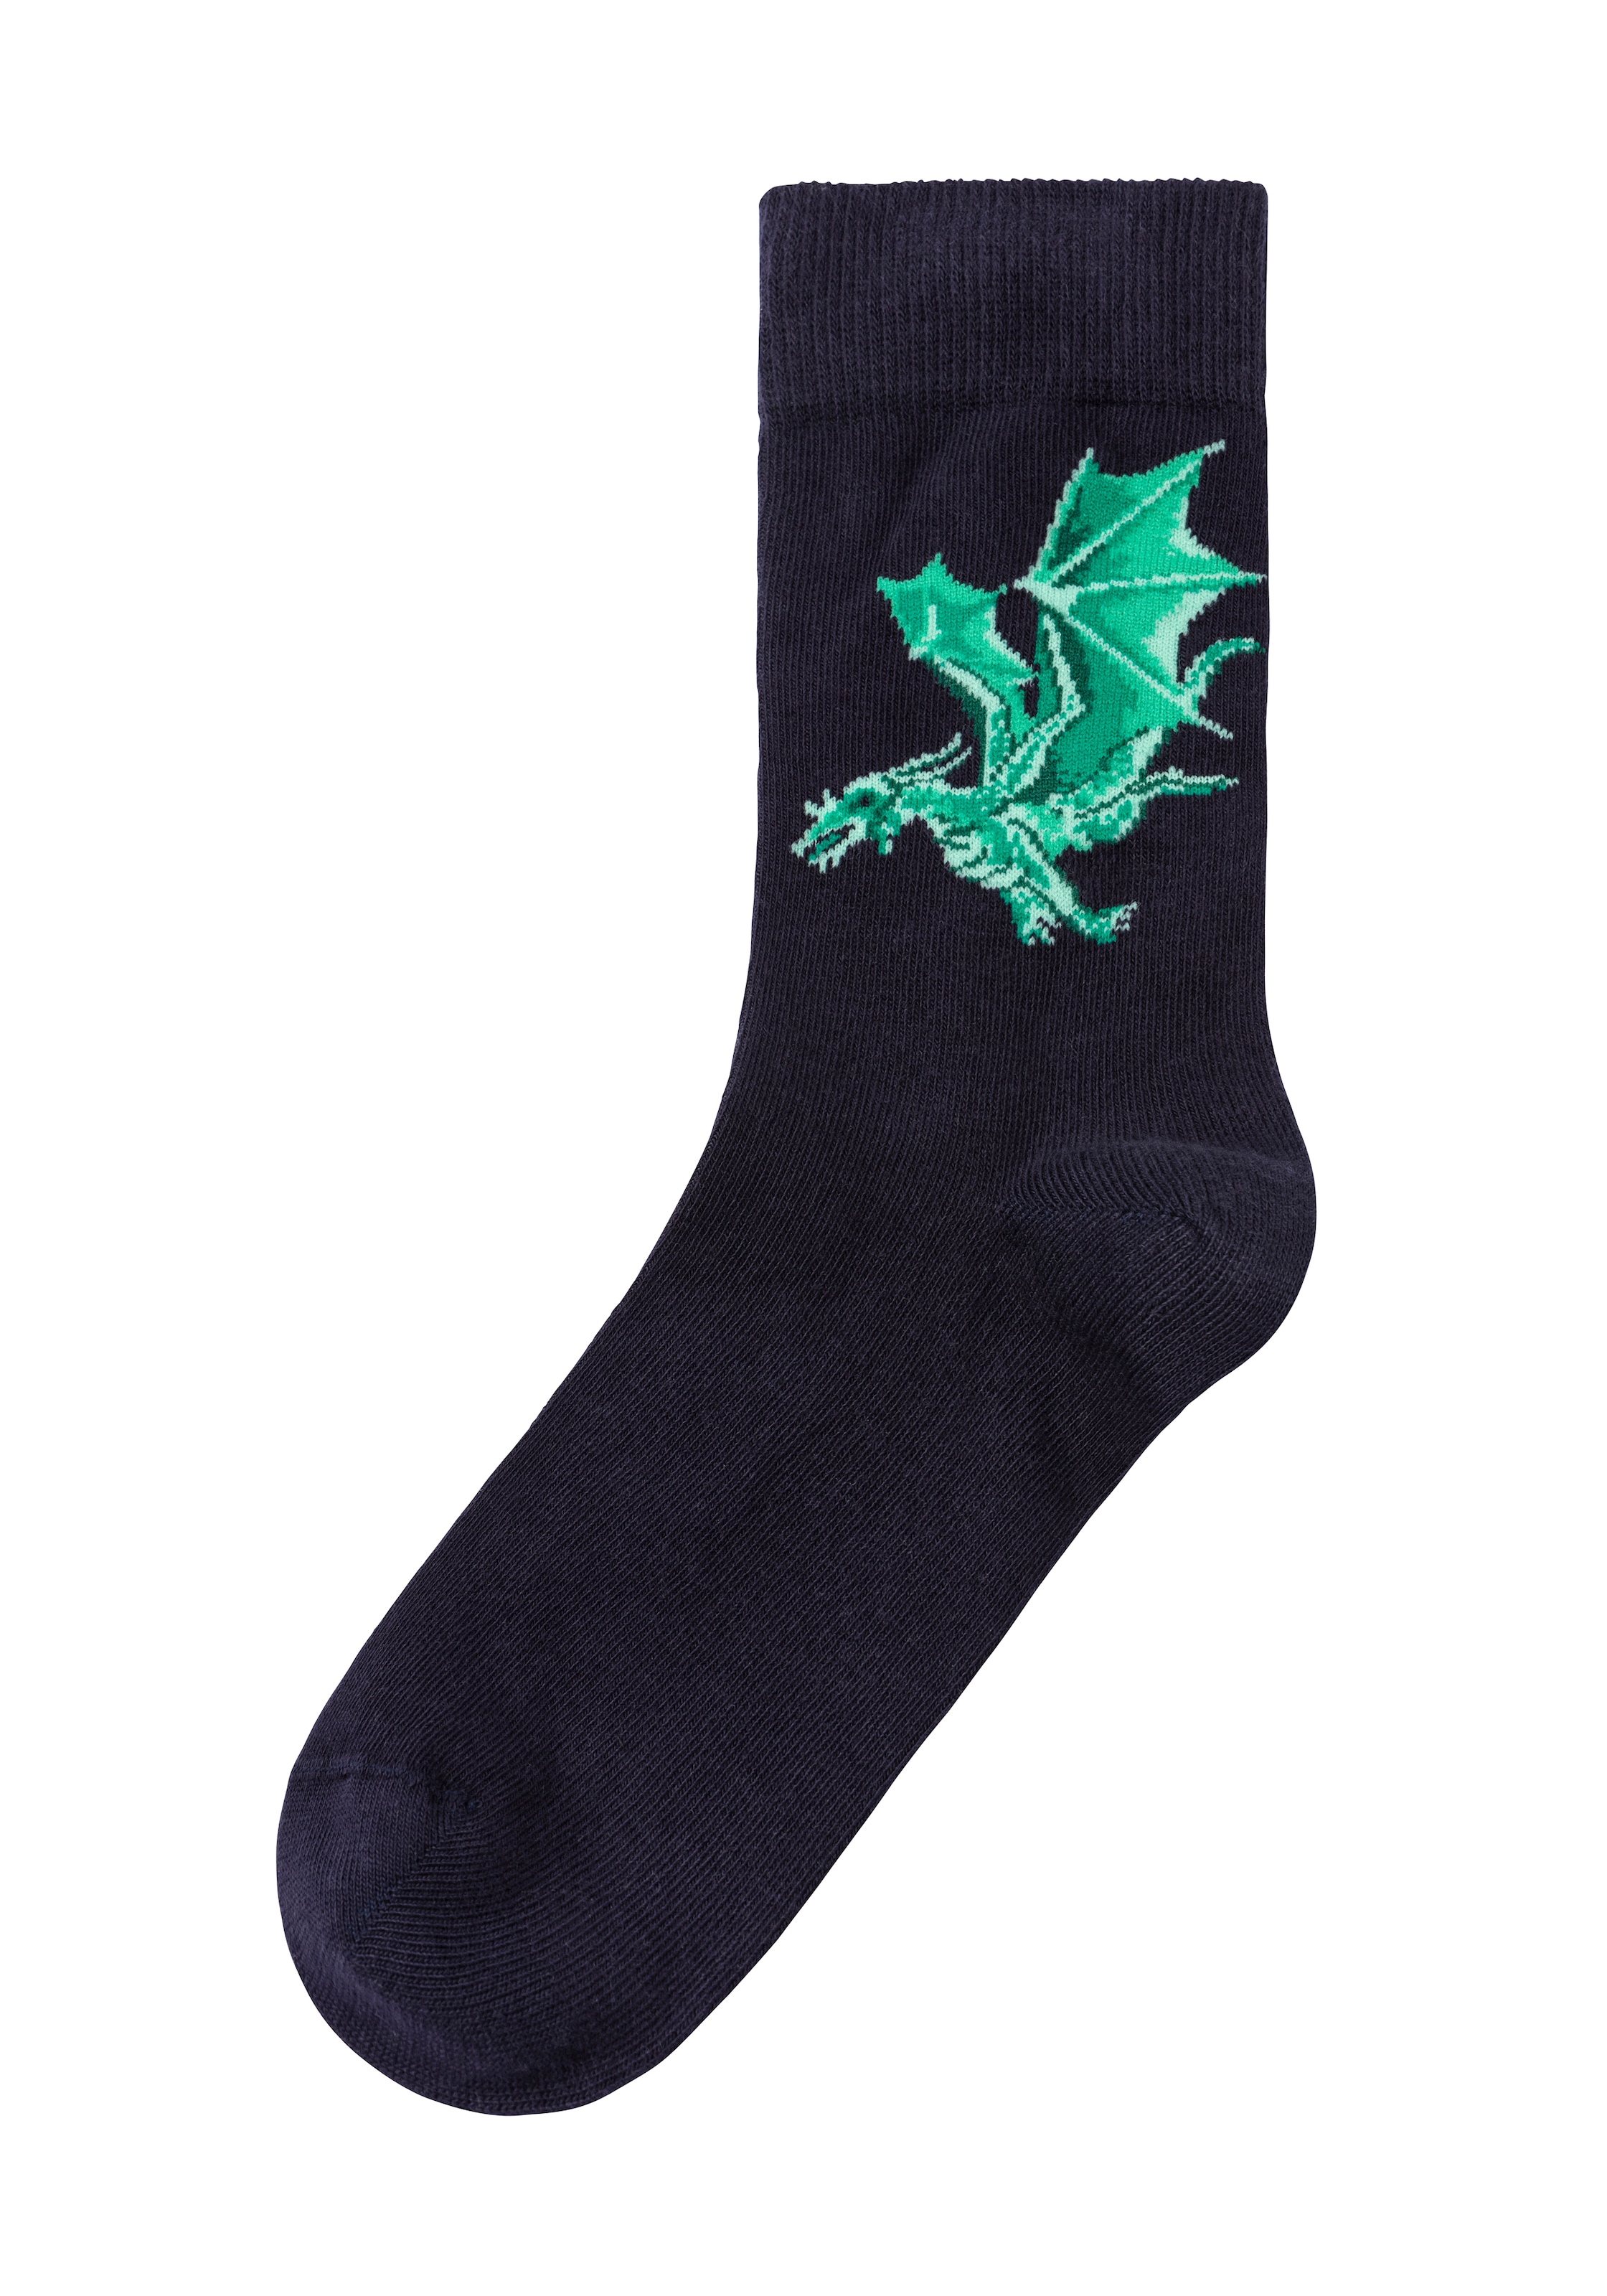 H.I.S Socken, online Motiven Drachen (5 Paar), bestellen mit unterschiedlichen